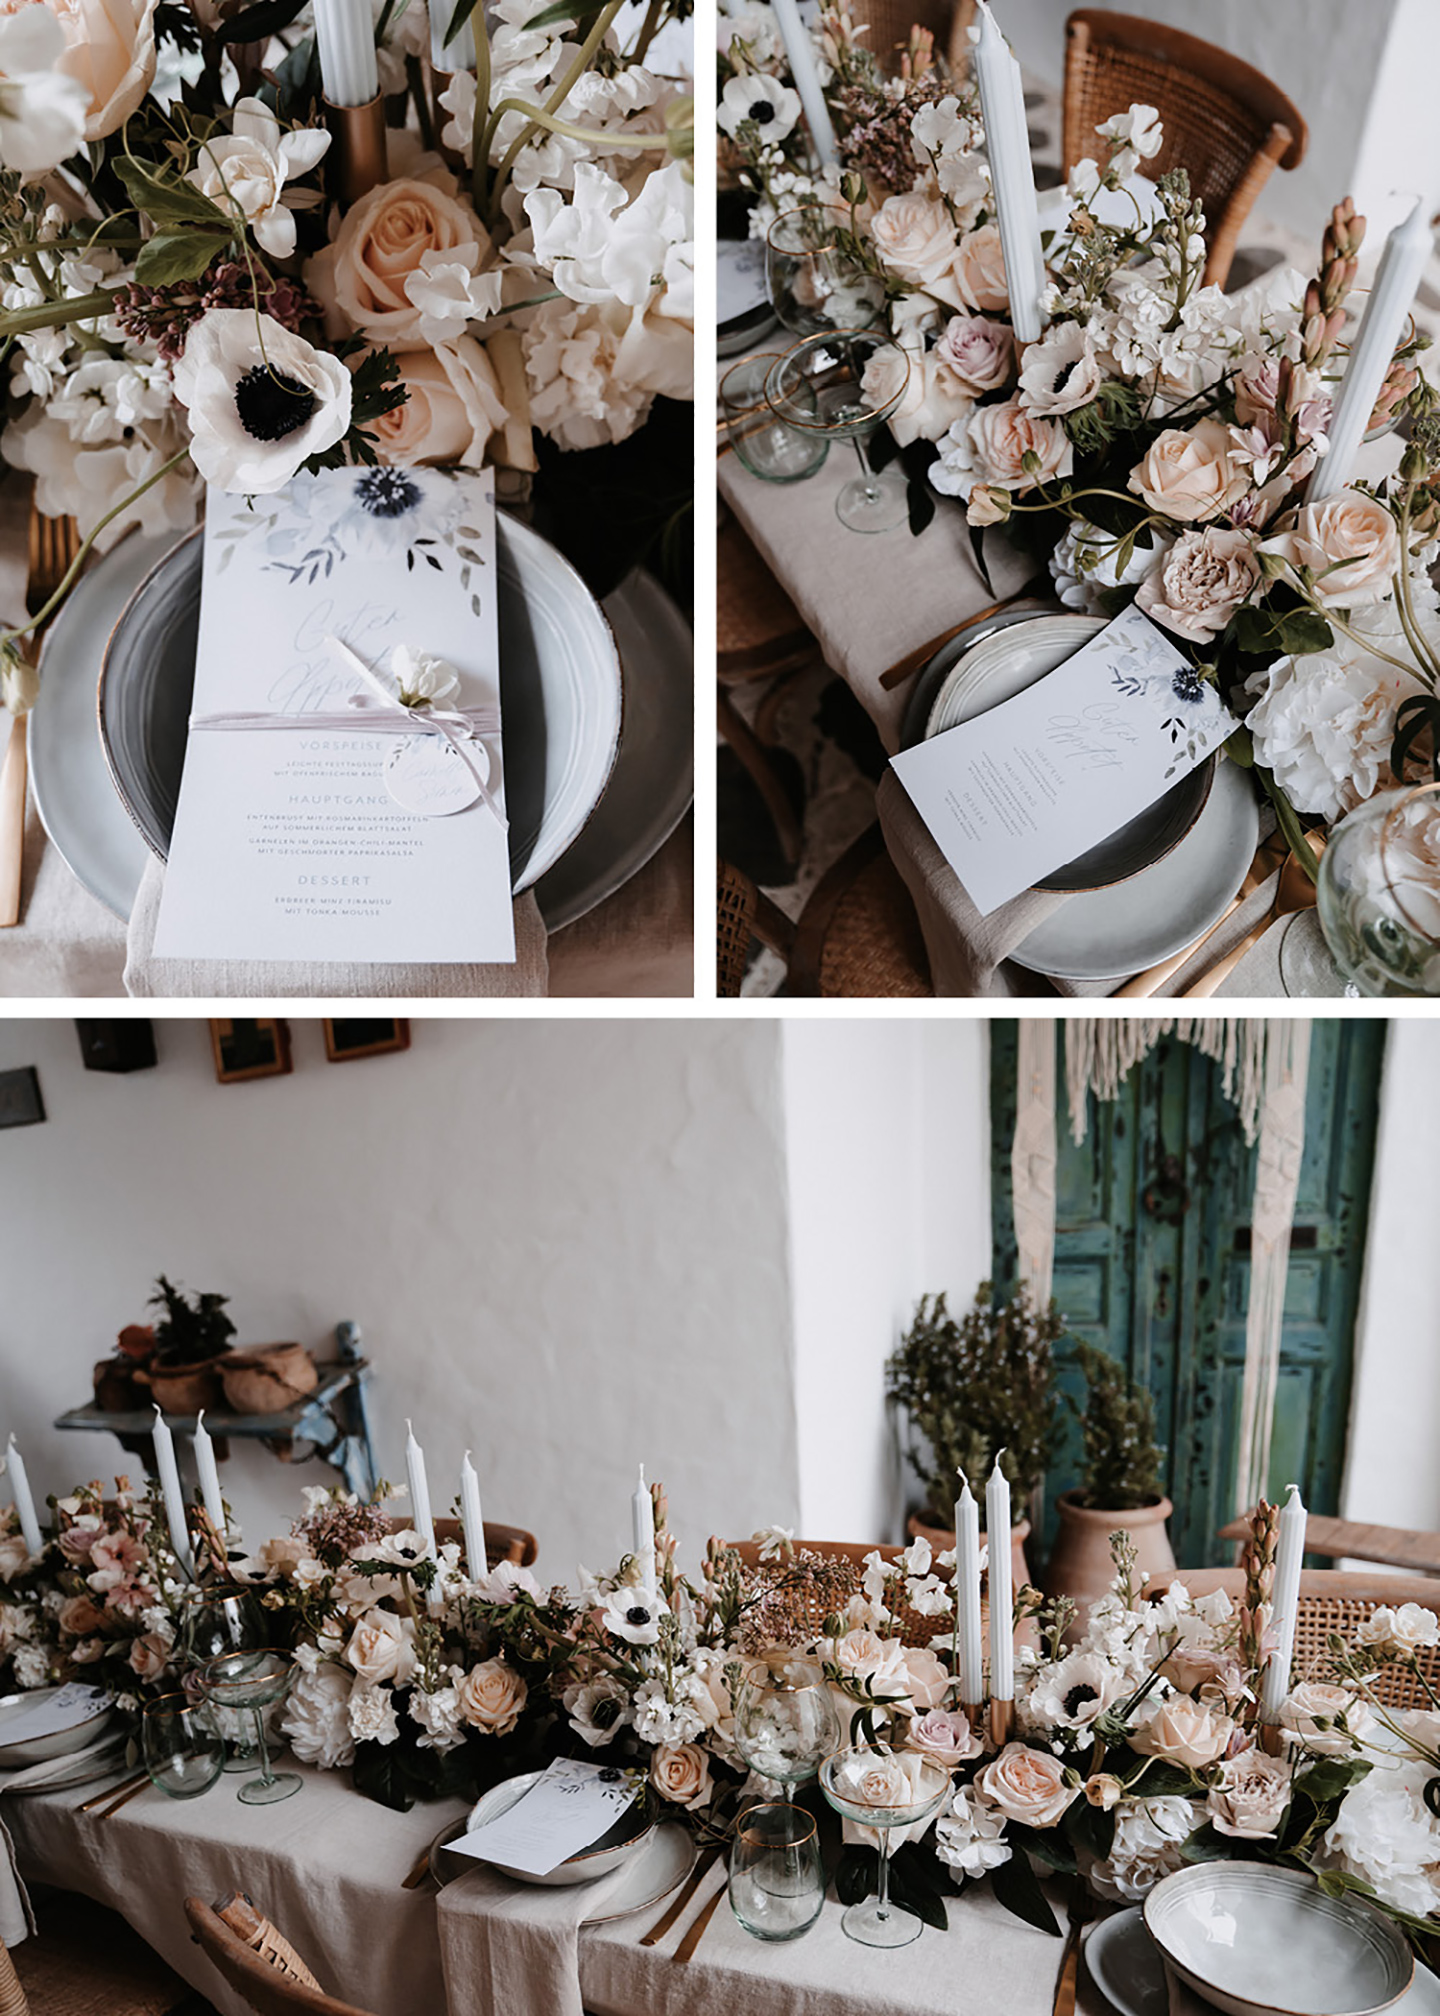 Die Hochzeitspapeterie wurde auf den Tellern der Gäste platziert. Ein eigenes Menü ist auf jedem Platz zu finden. Die geschmückten Blumen runden das Bild ab. 